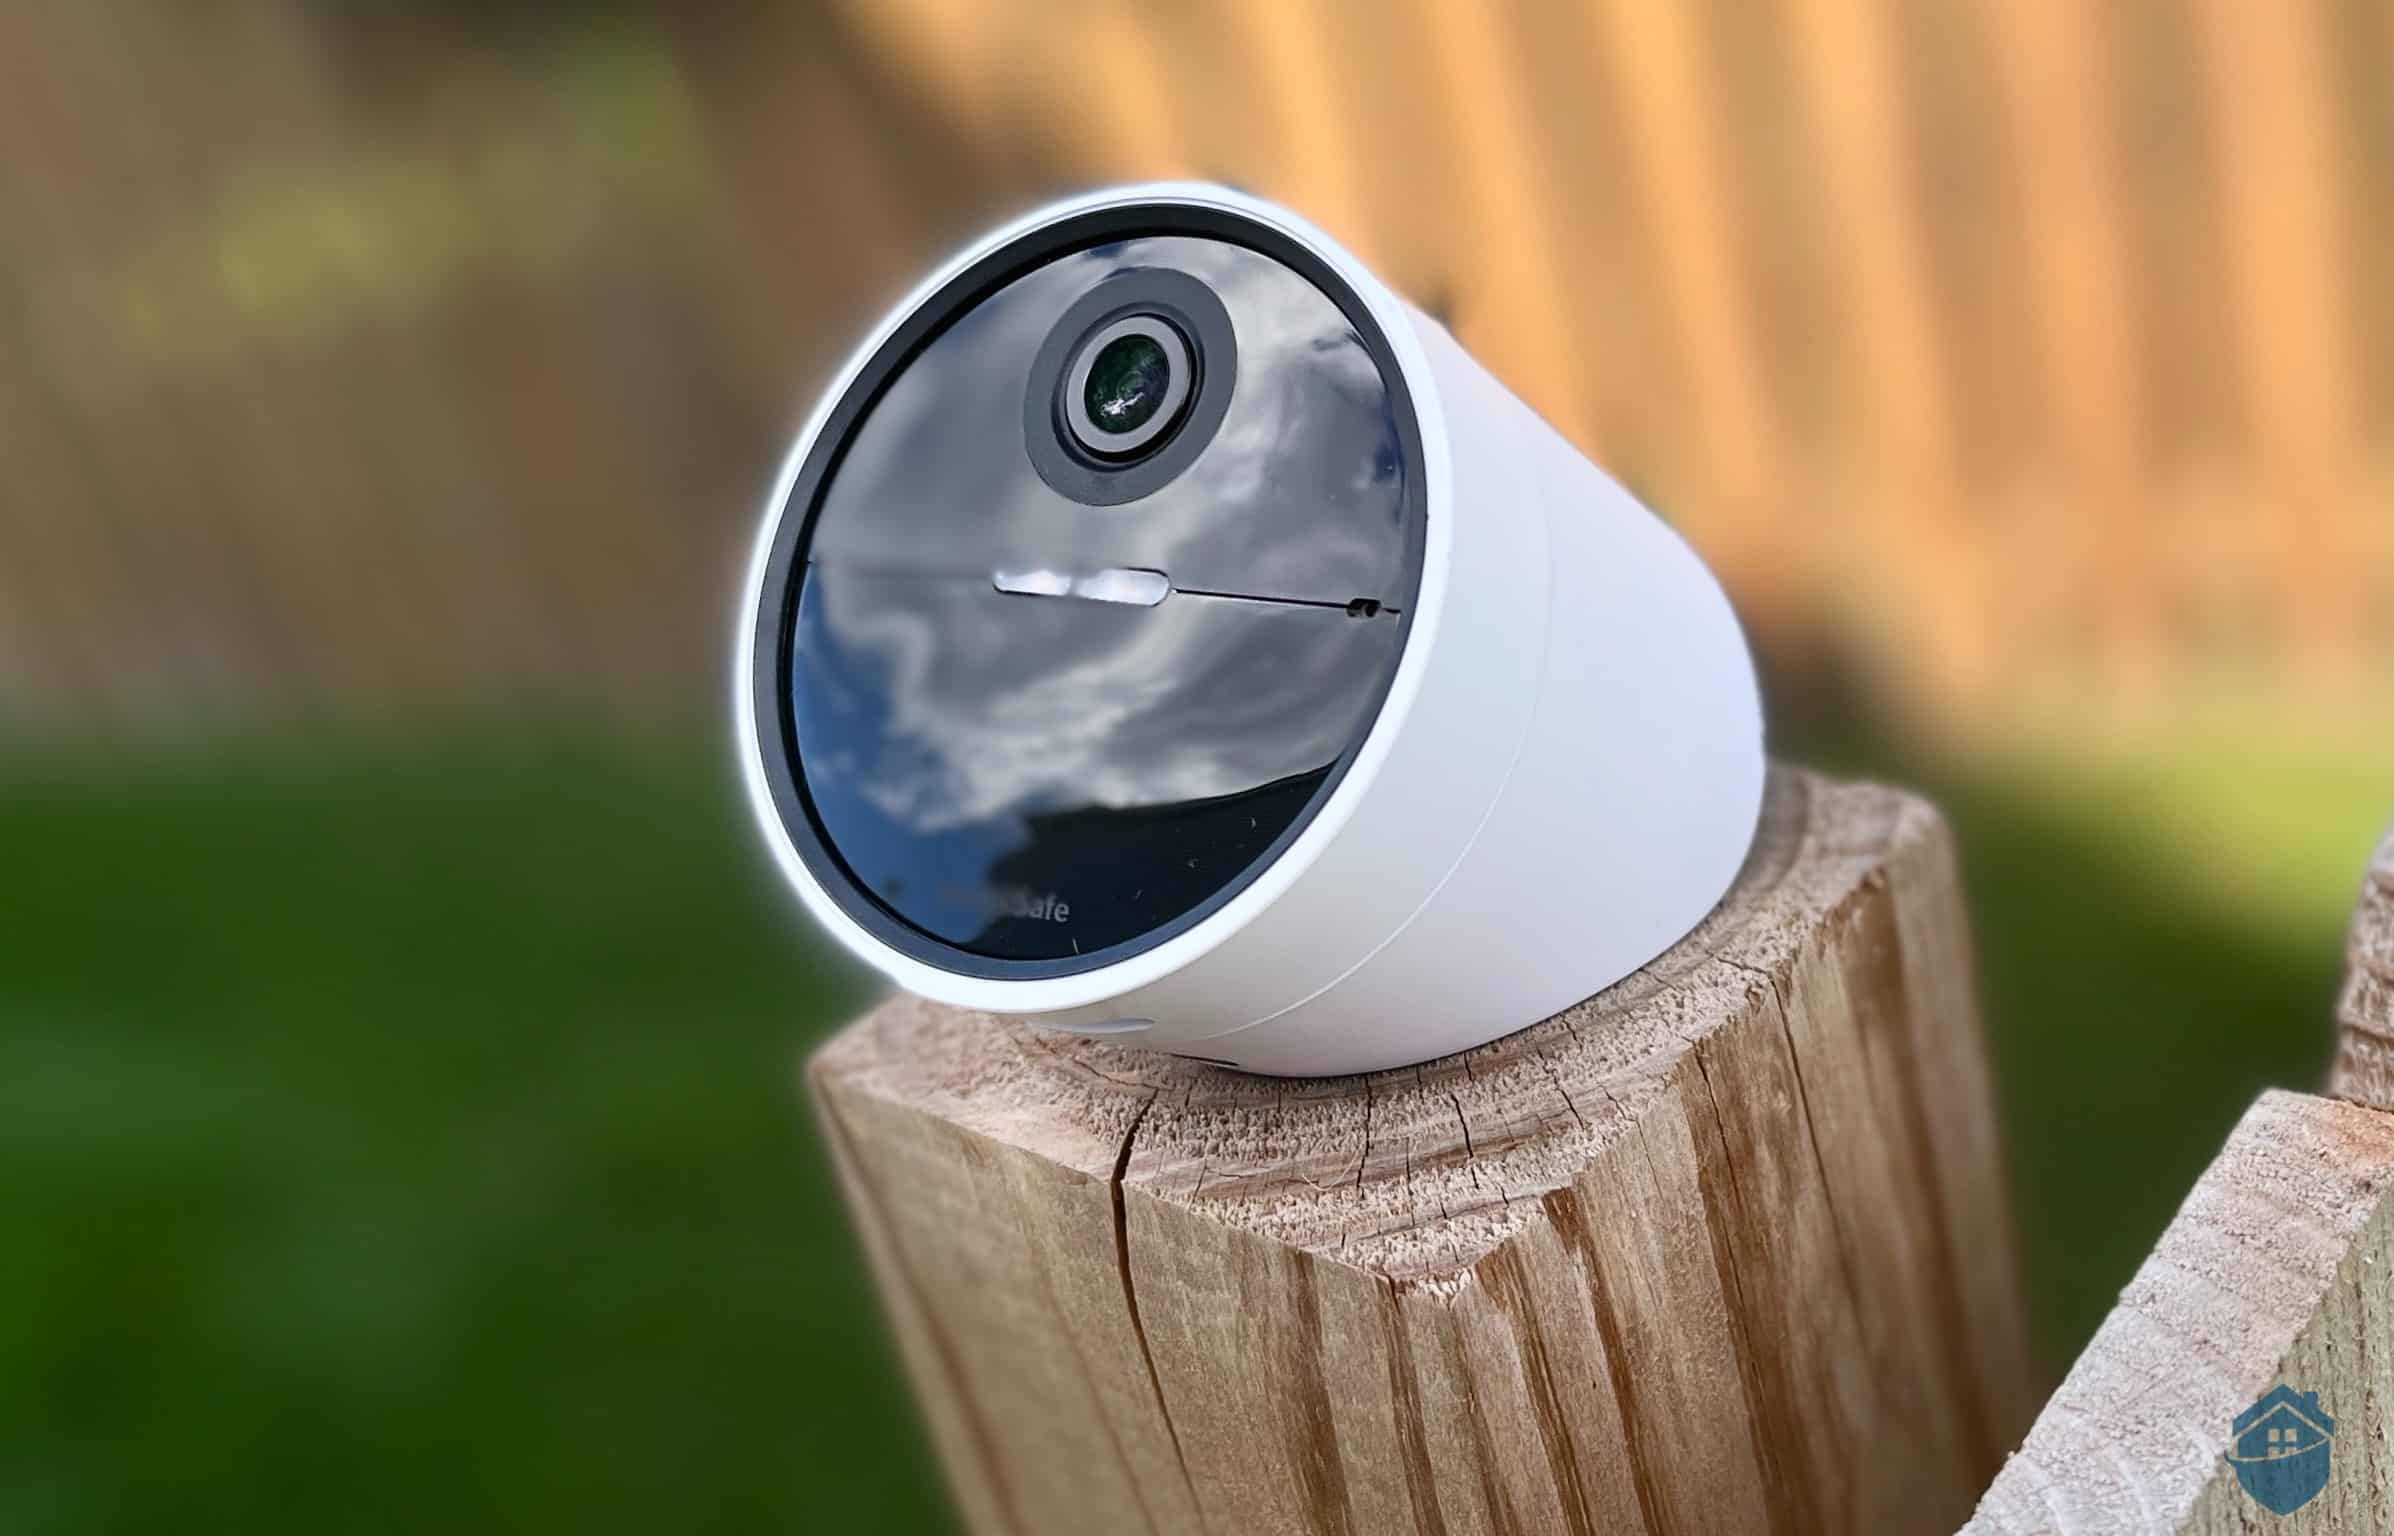 SimpliSafe Outdoor Camera